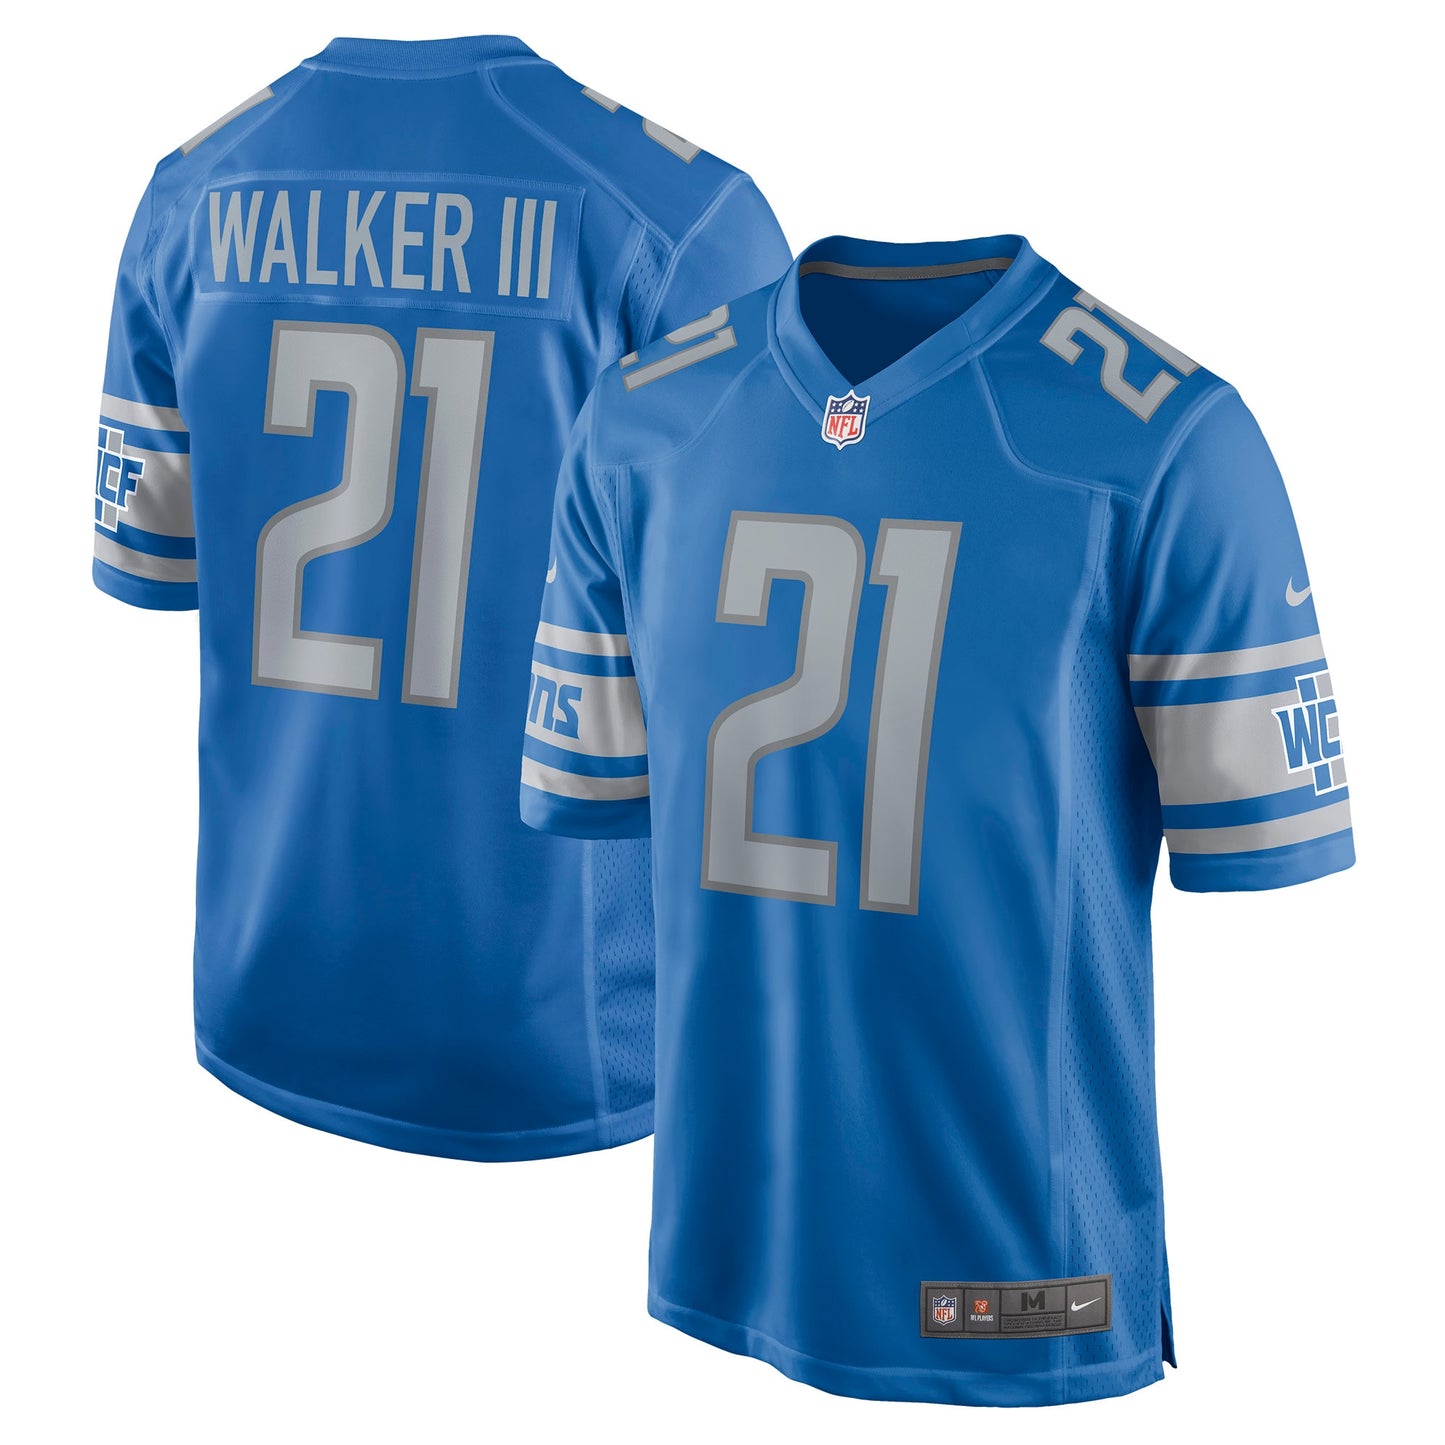 Tracy Walker III Detroit Lions Nike Game Jersey - Blue